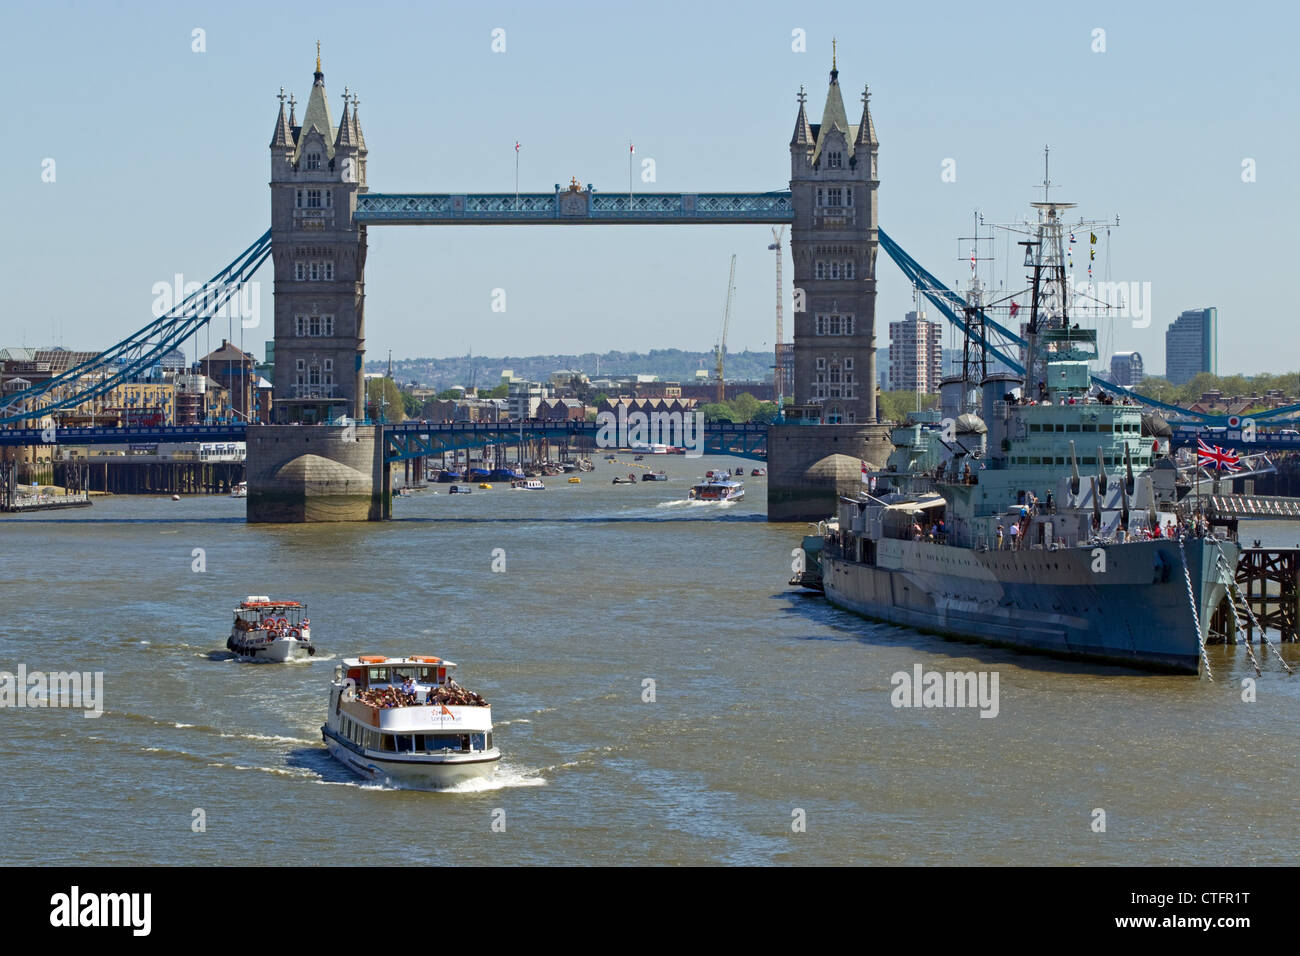 Le HMS Belfast & Tour de Londres, la Tamise, Londres, dimanche 27 mai 2012. Banque D'Images